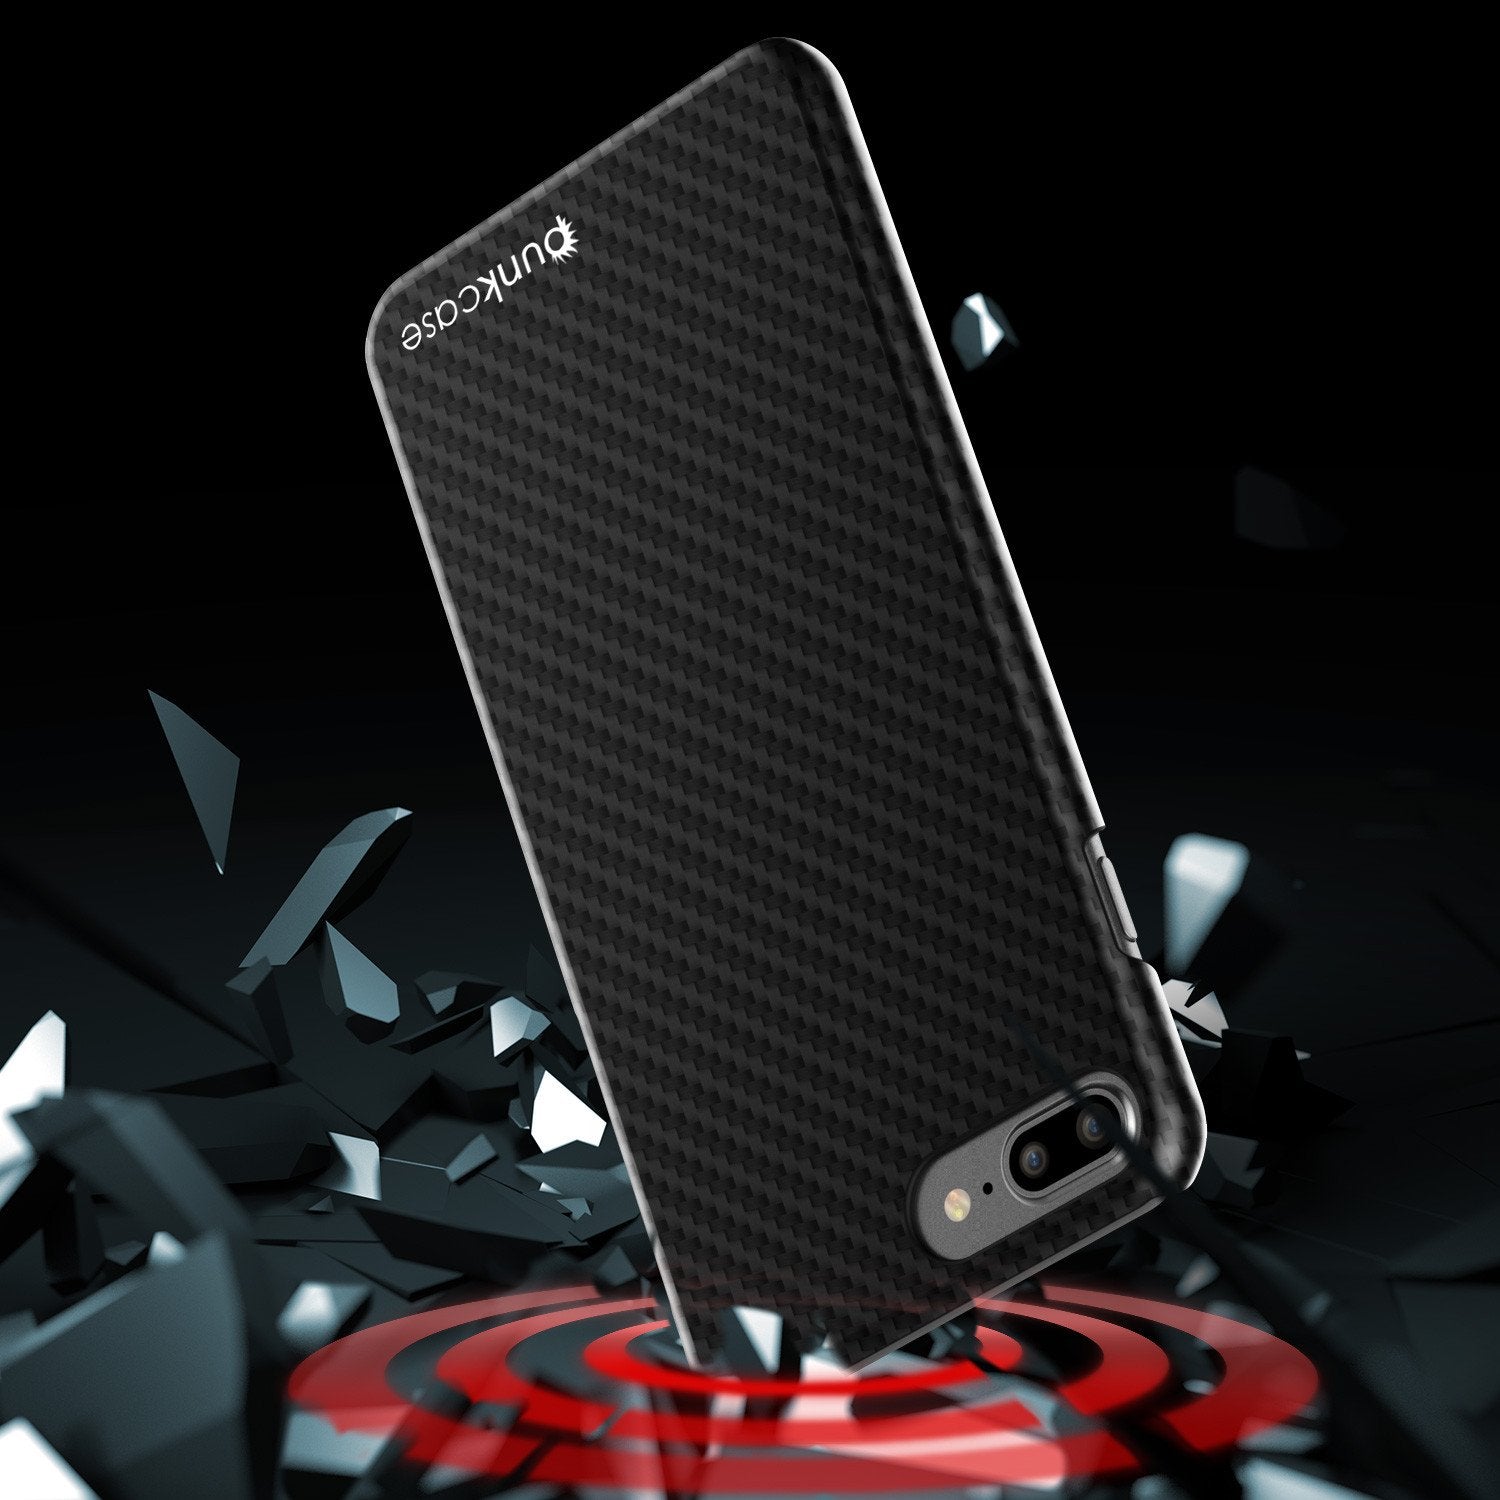 iPhone 7+ Plus Case - Punkcase CarbonShield Jet Black